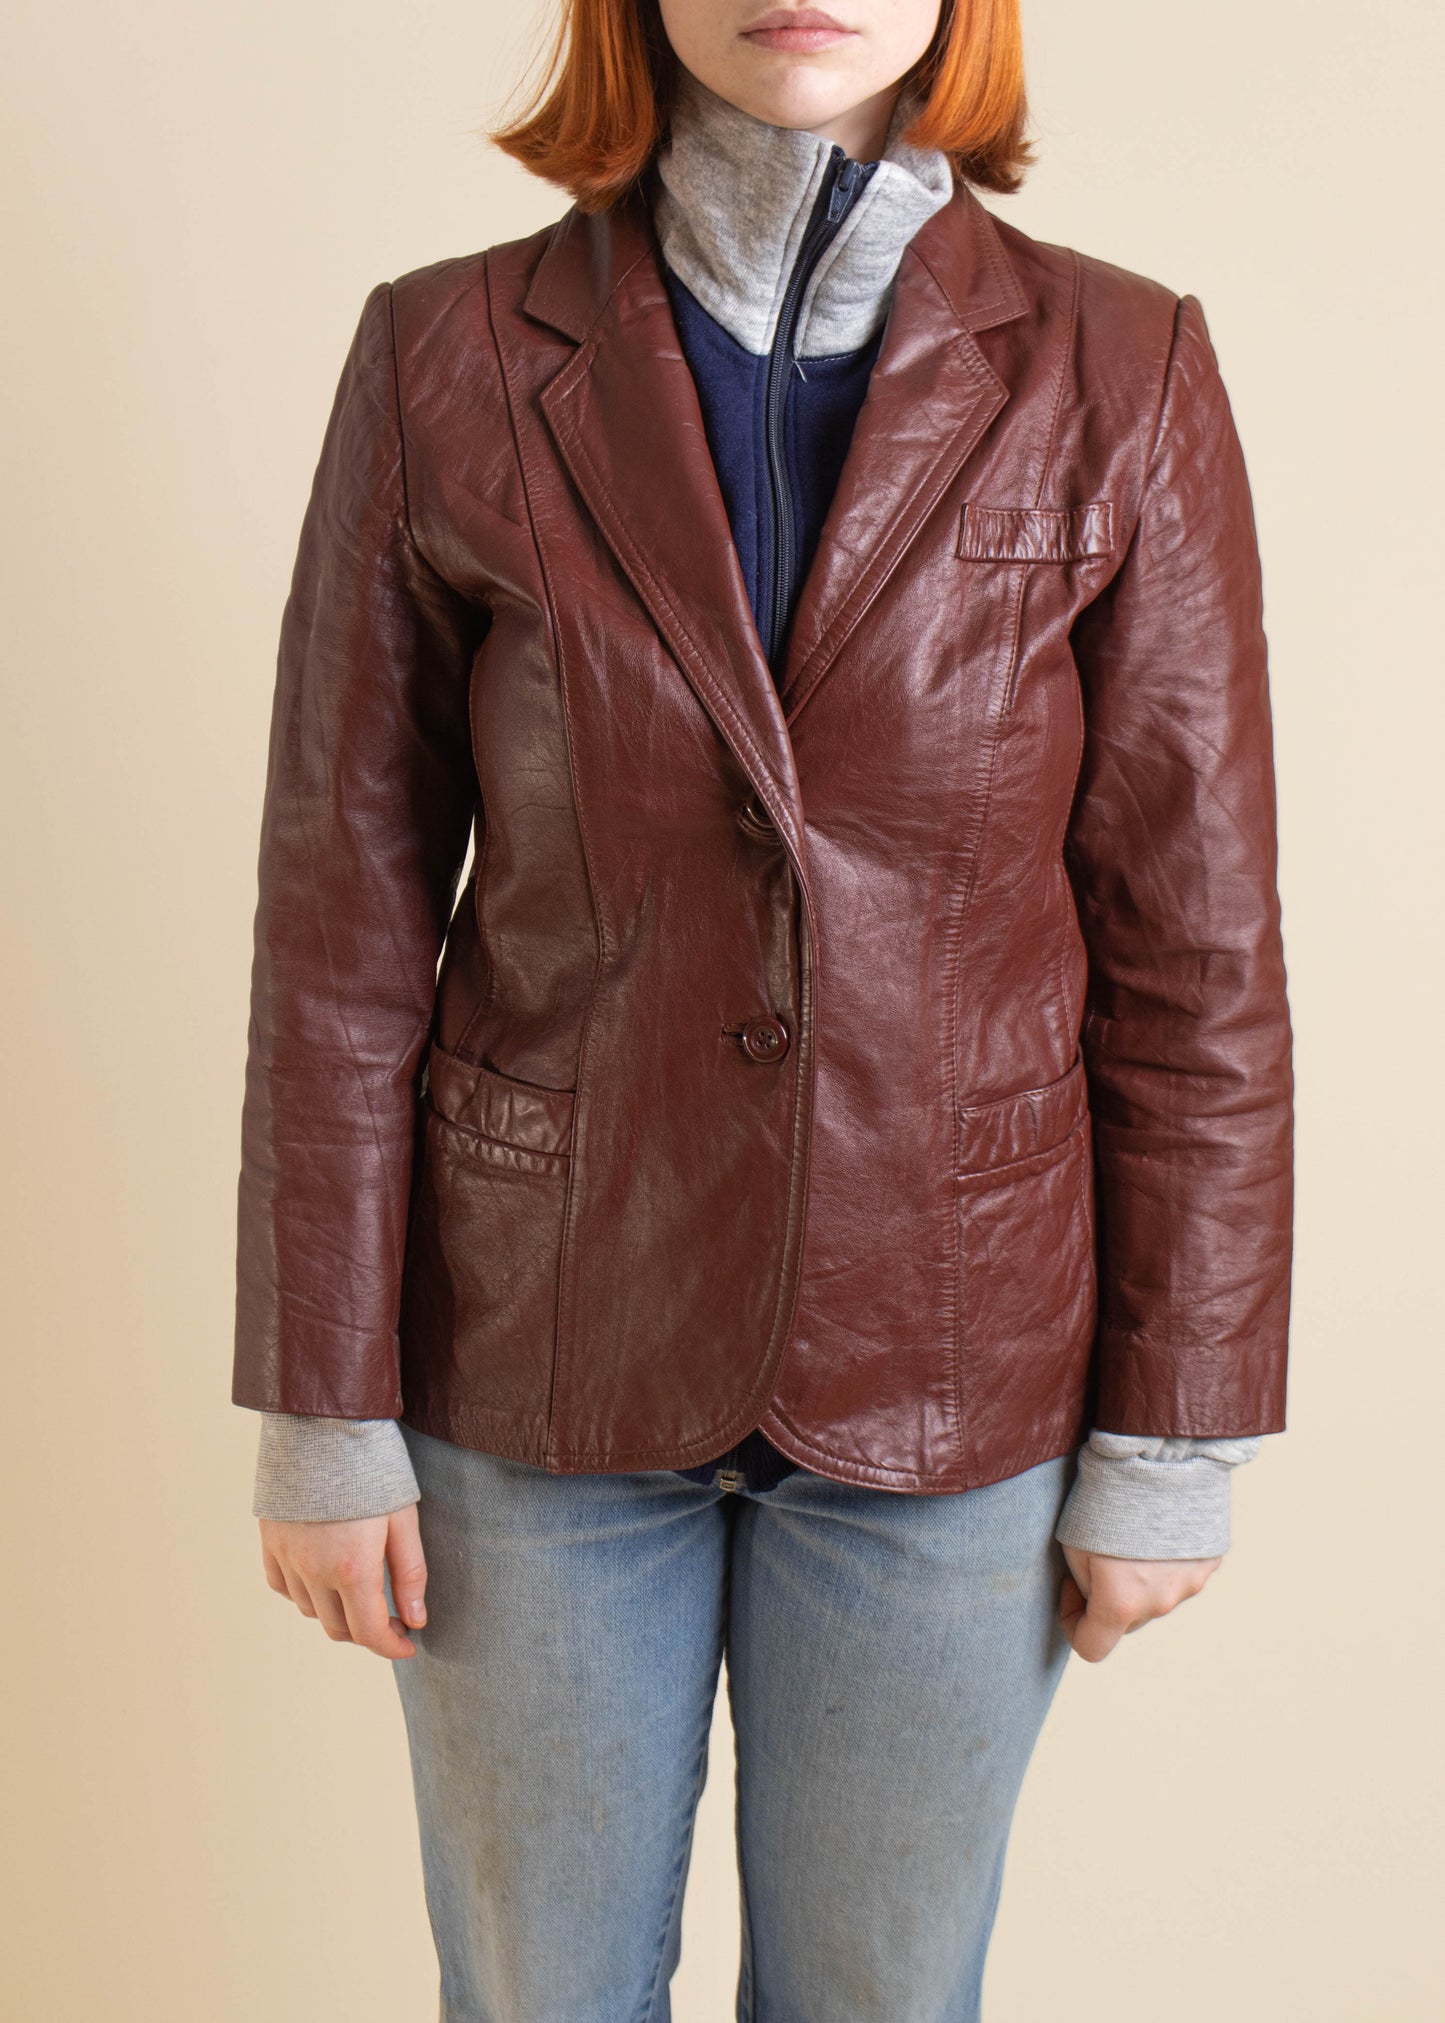 1970s Genuine Leather Blazer Jacket Size 2XS/S